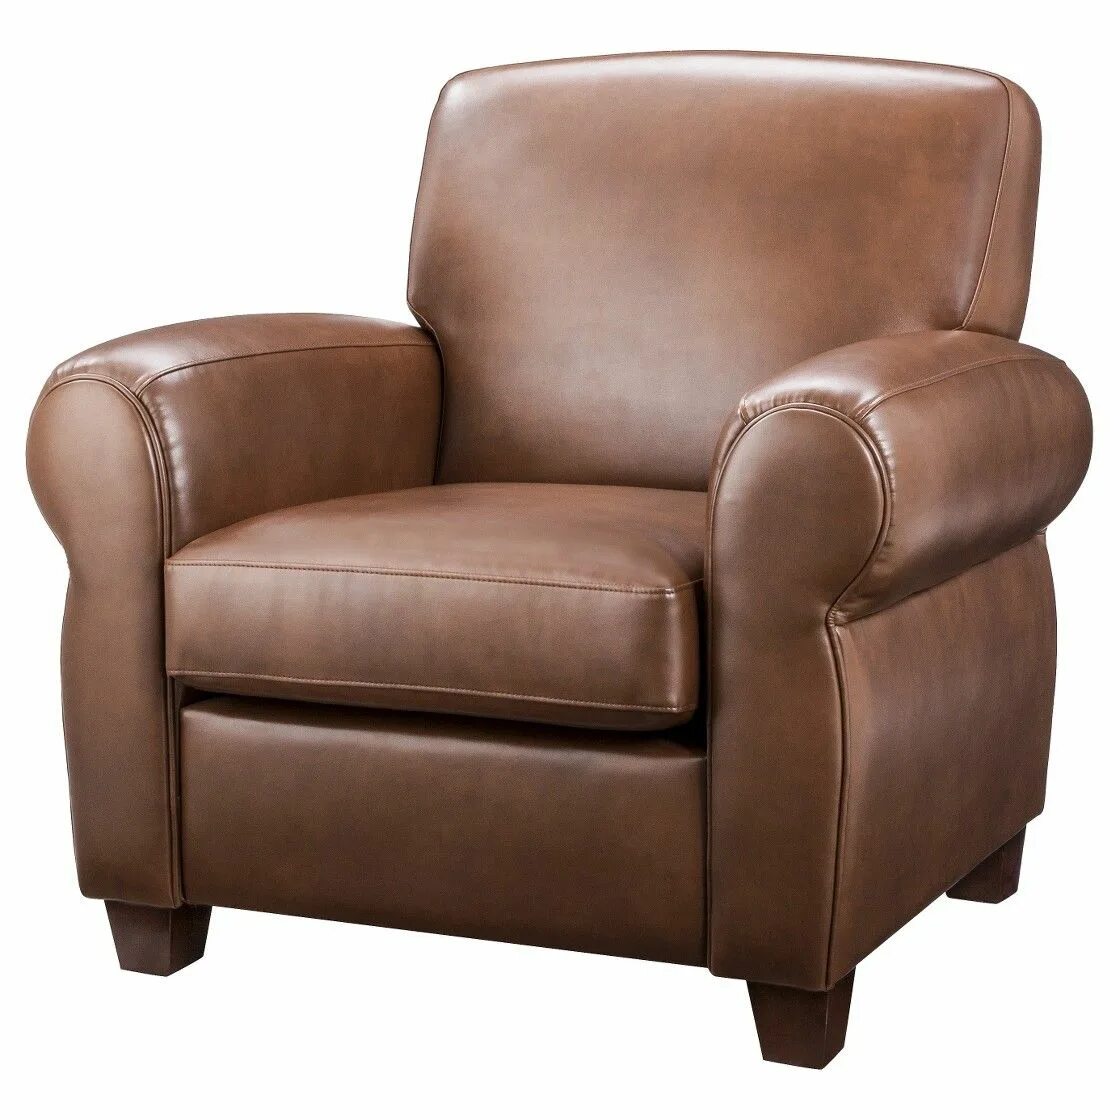 Высокое кожаное кресло. Кресло кожаное. Кожаные кресла для гостиной. Финское кожаное кресло. Кожаные кресла для кафе.